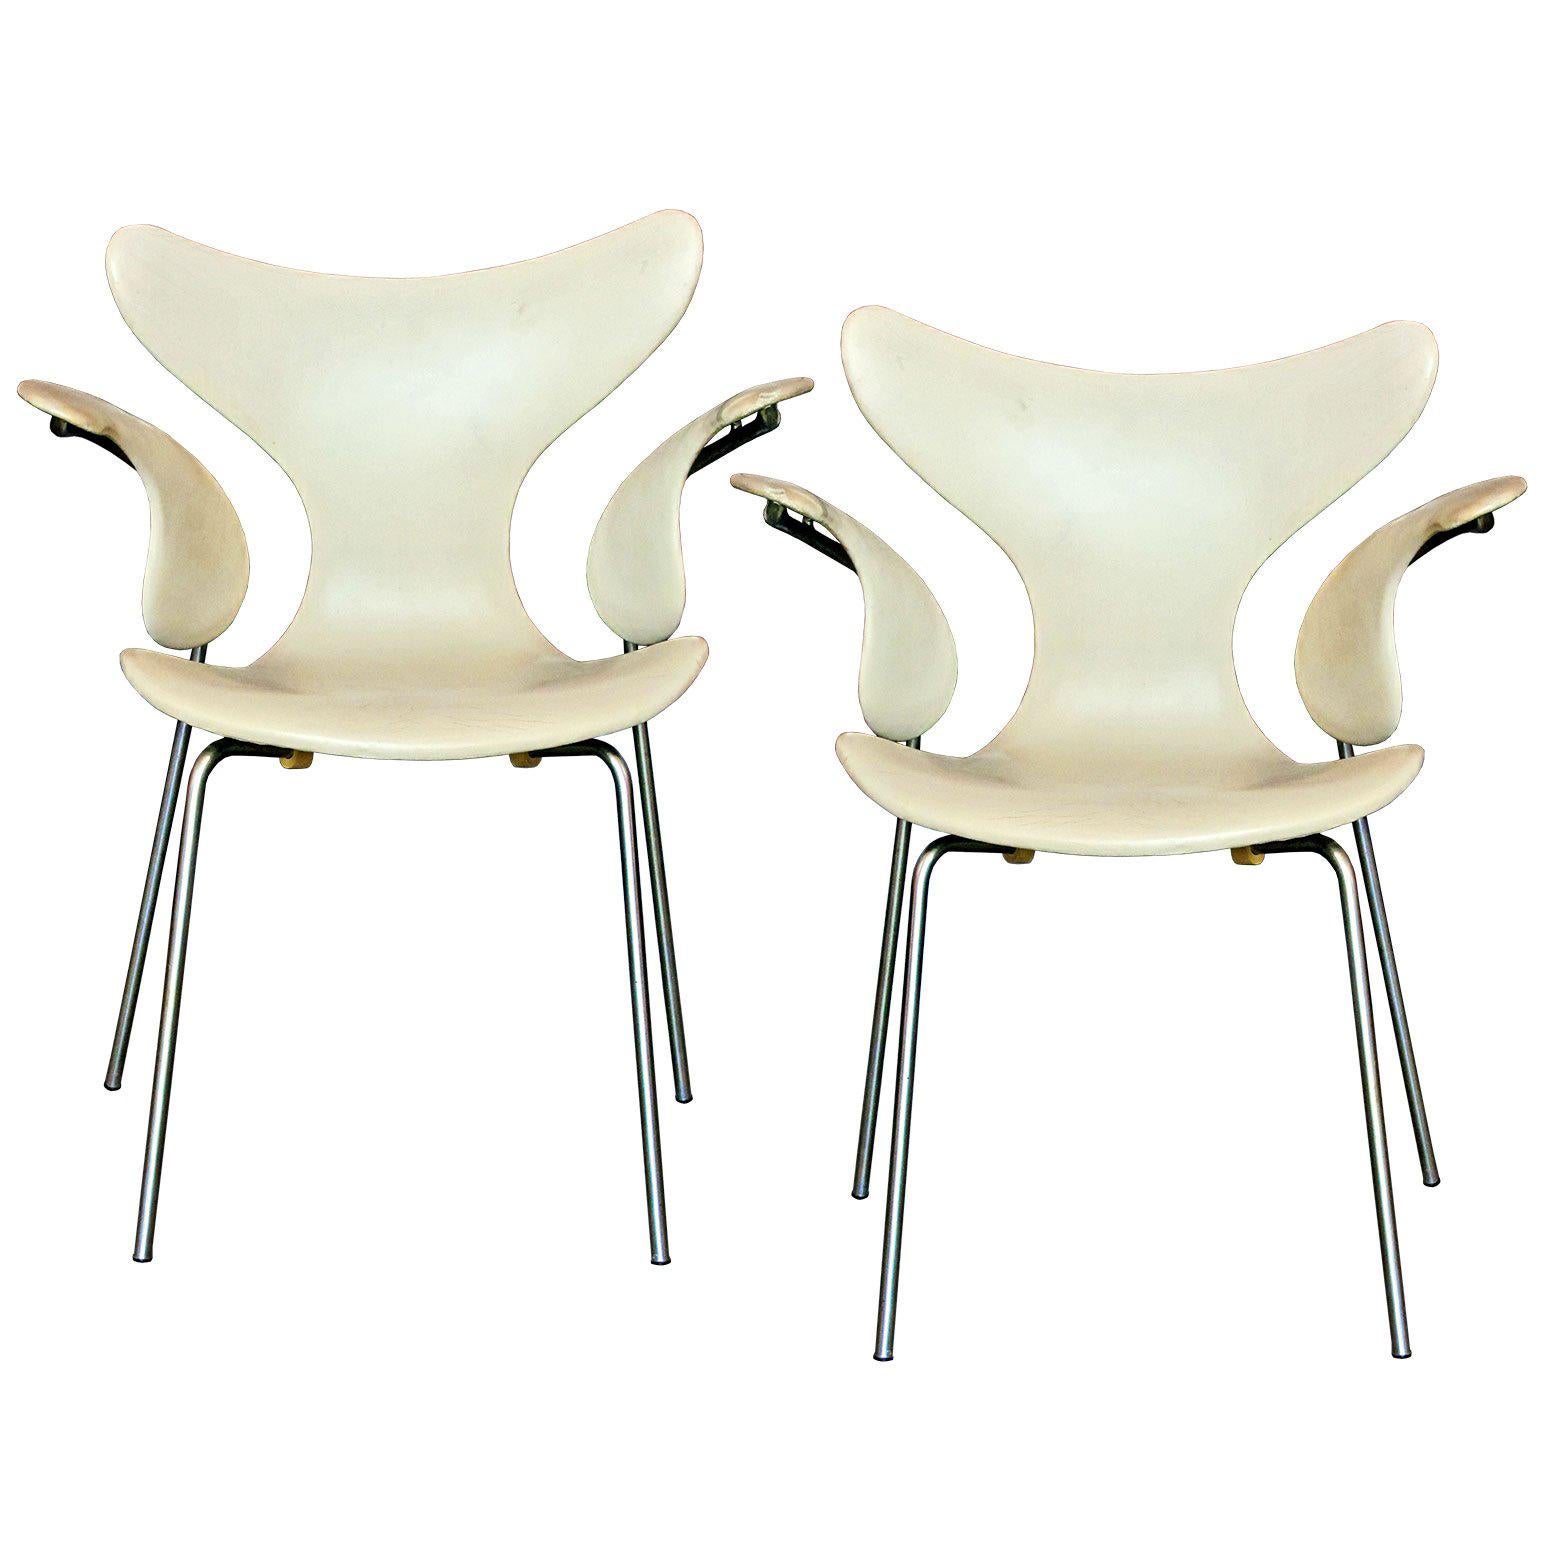 Arne Jacobsen Model 3208 "Seagull" Chairs